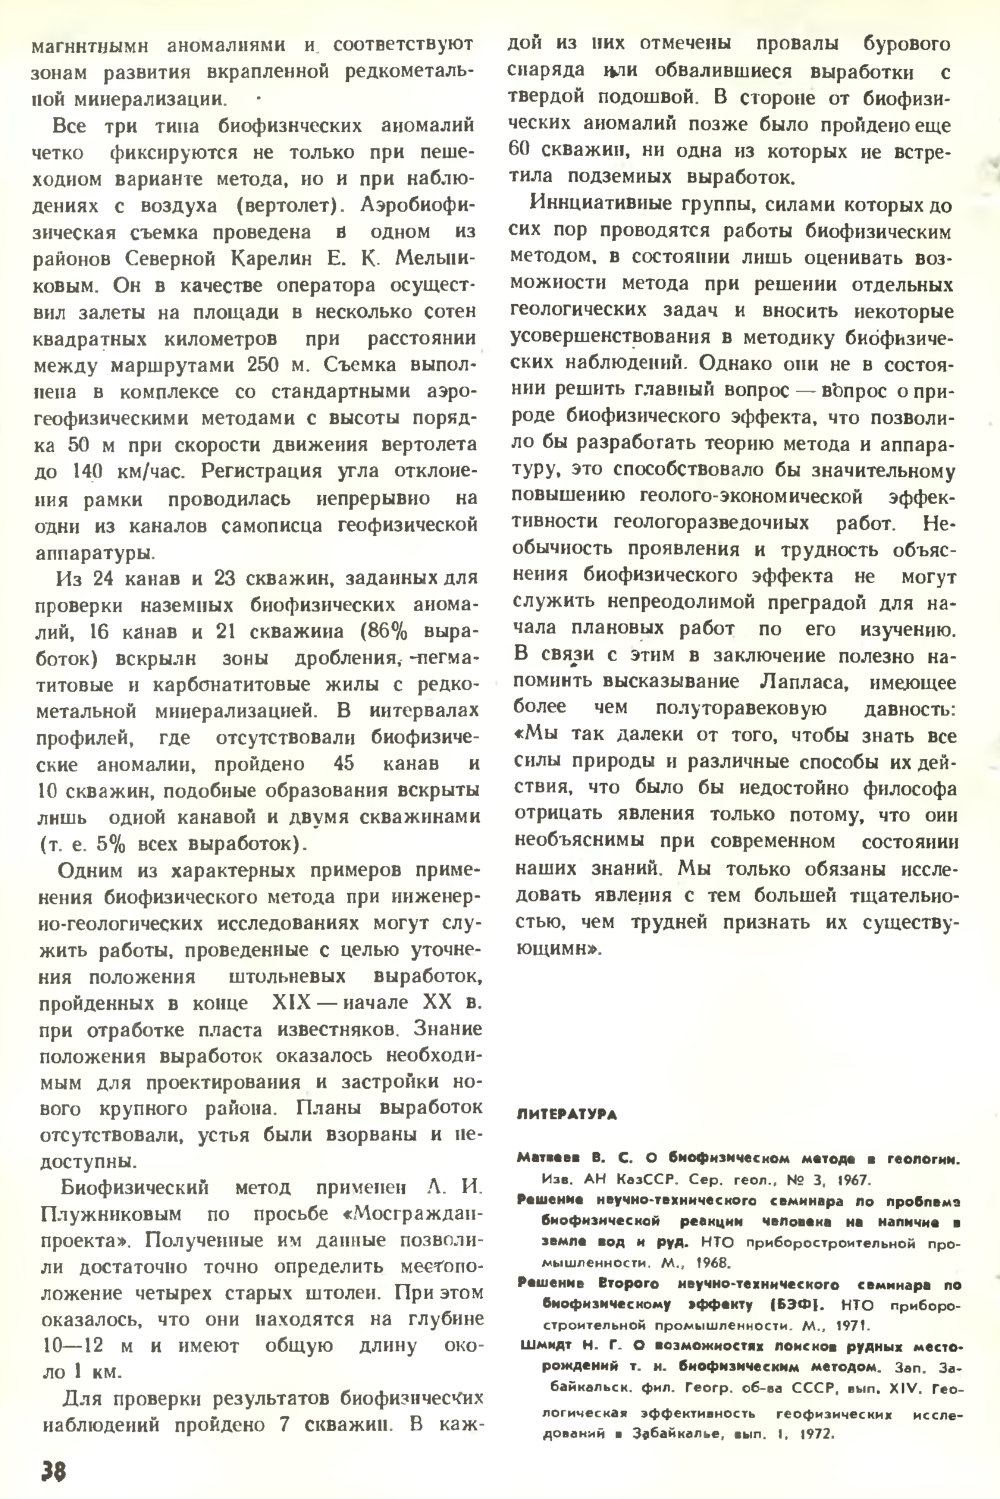 Биофизический метод... Н.Н. Сочеванов, В.С. Матвеев. Химия и жизнь, 1975, №7, с.36-38. Фотокопия №3